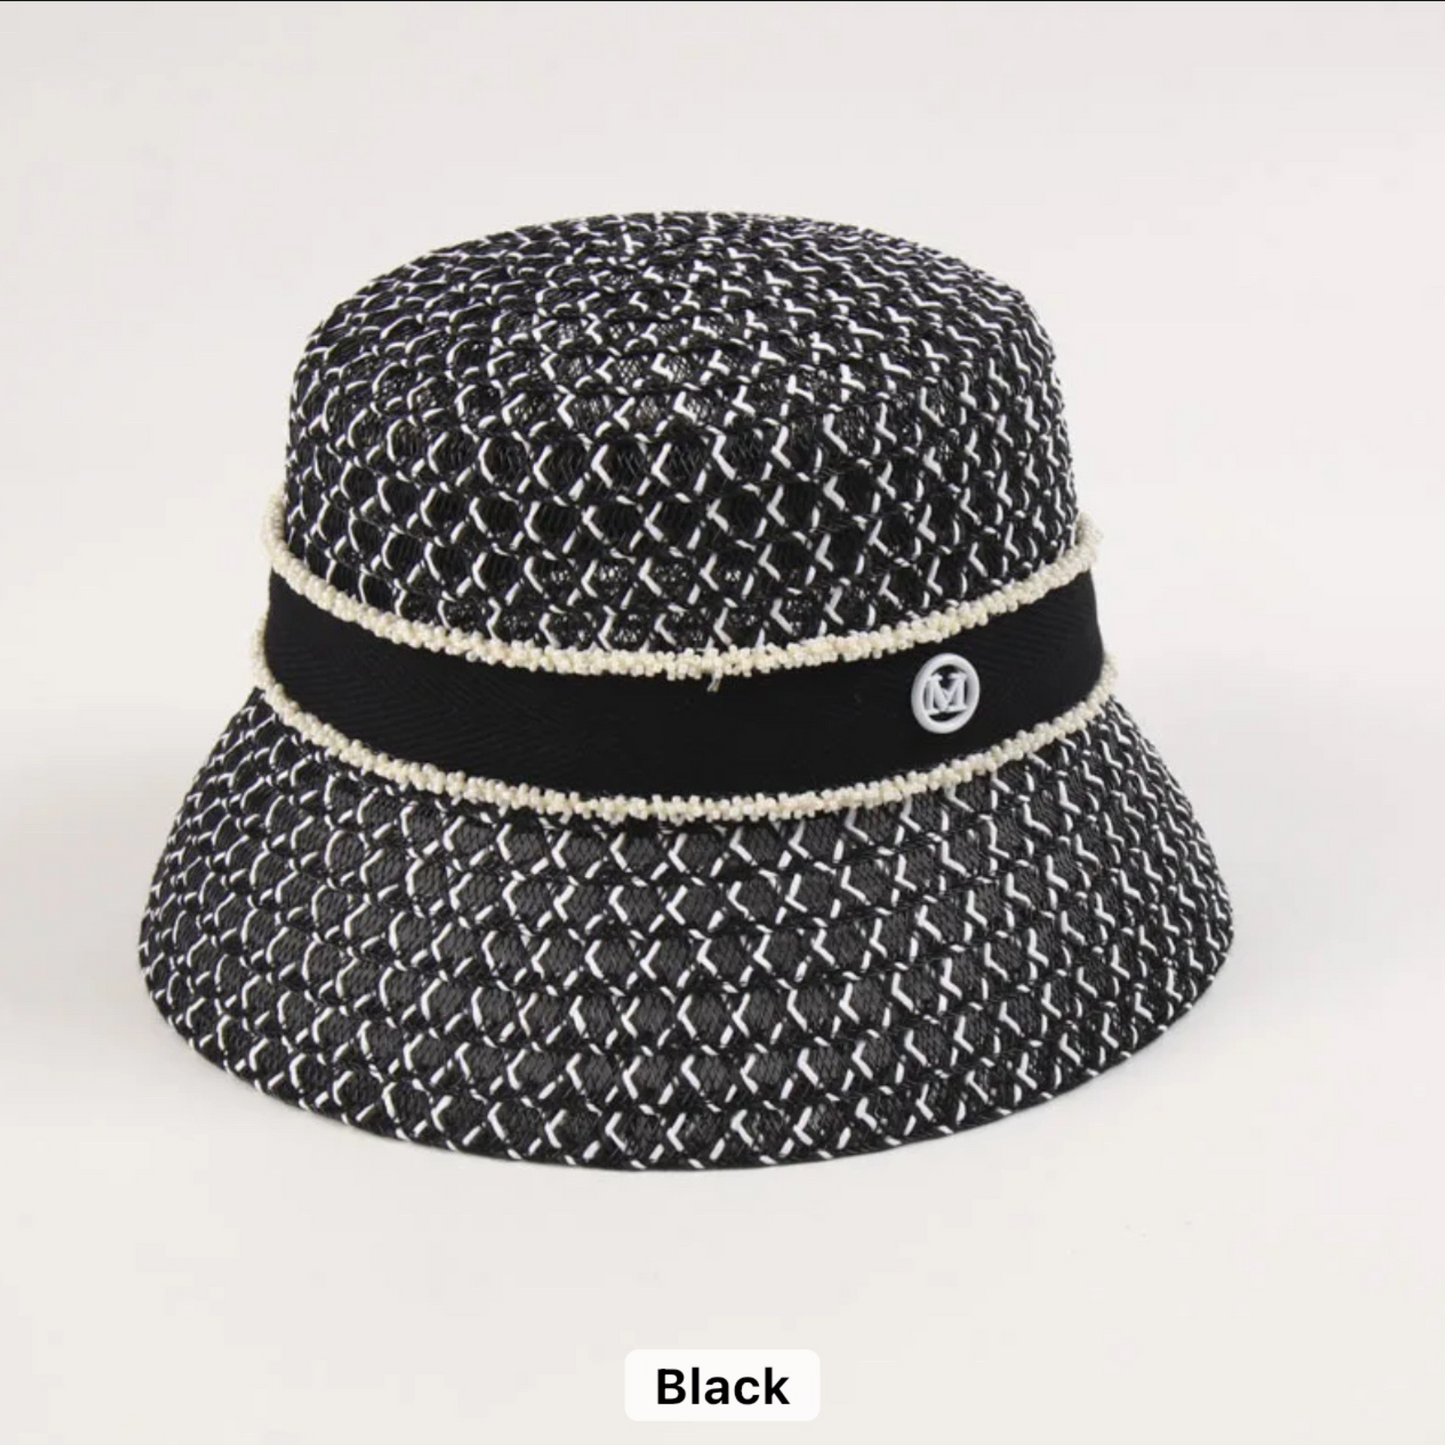 Monochrome Woven Bucket Hat